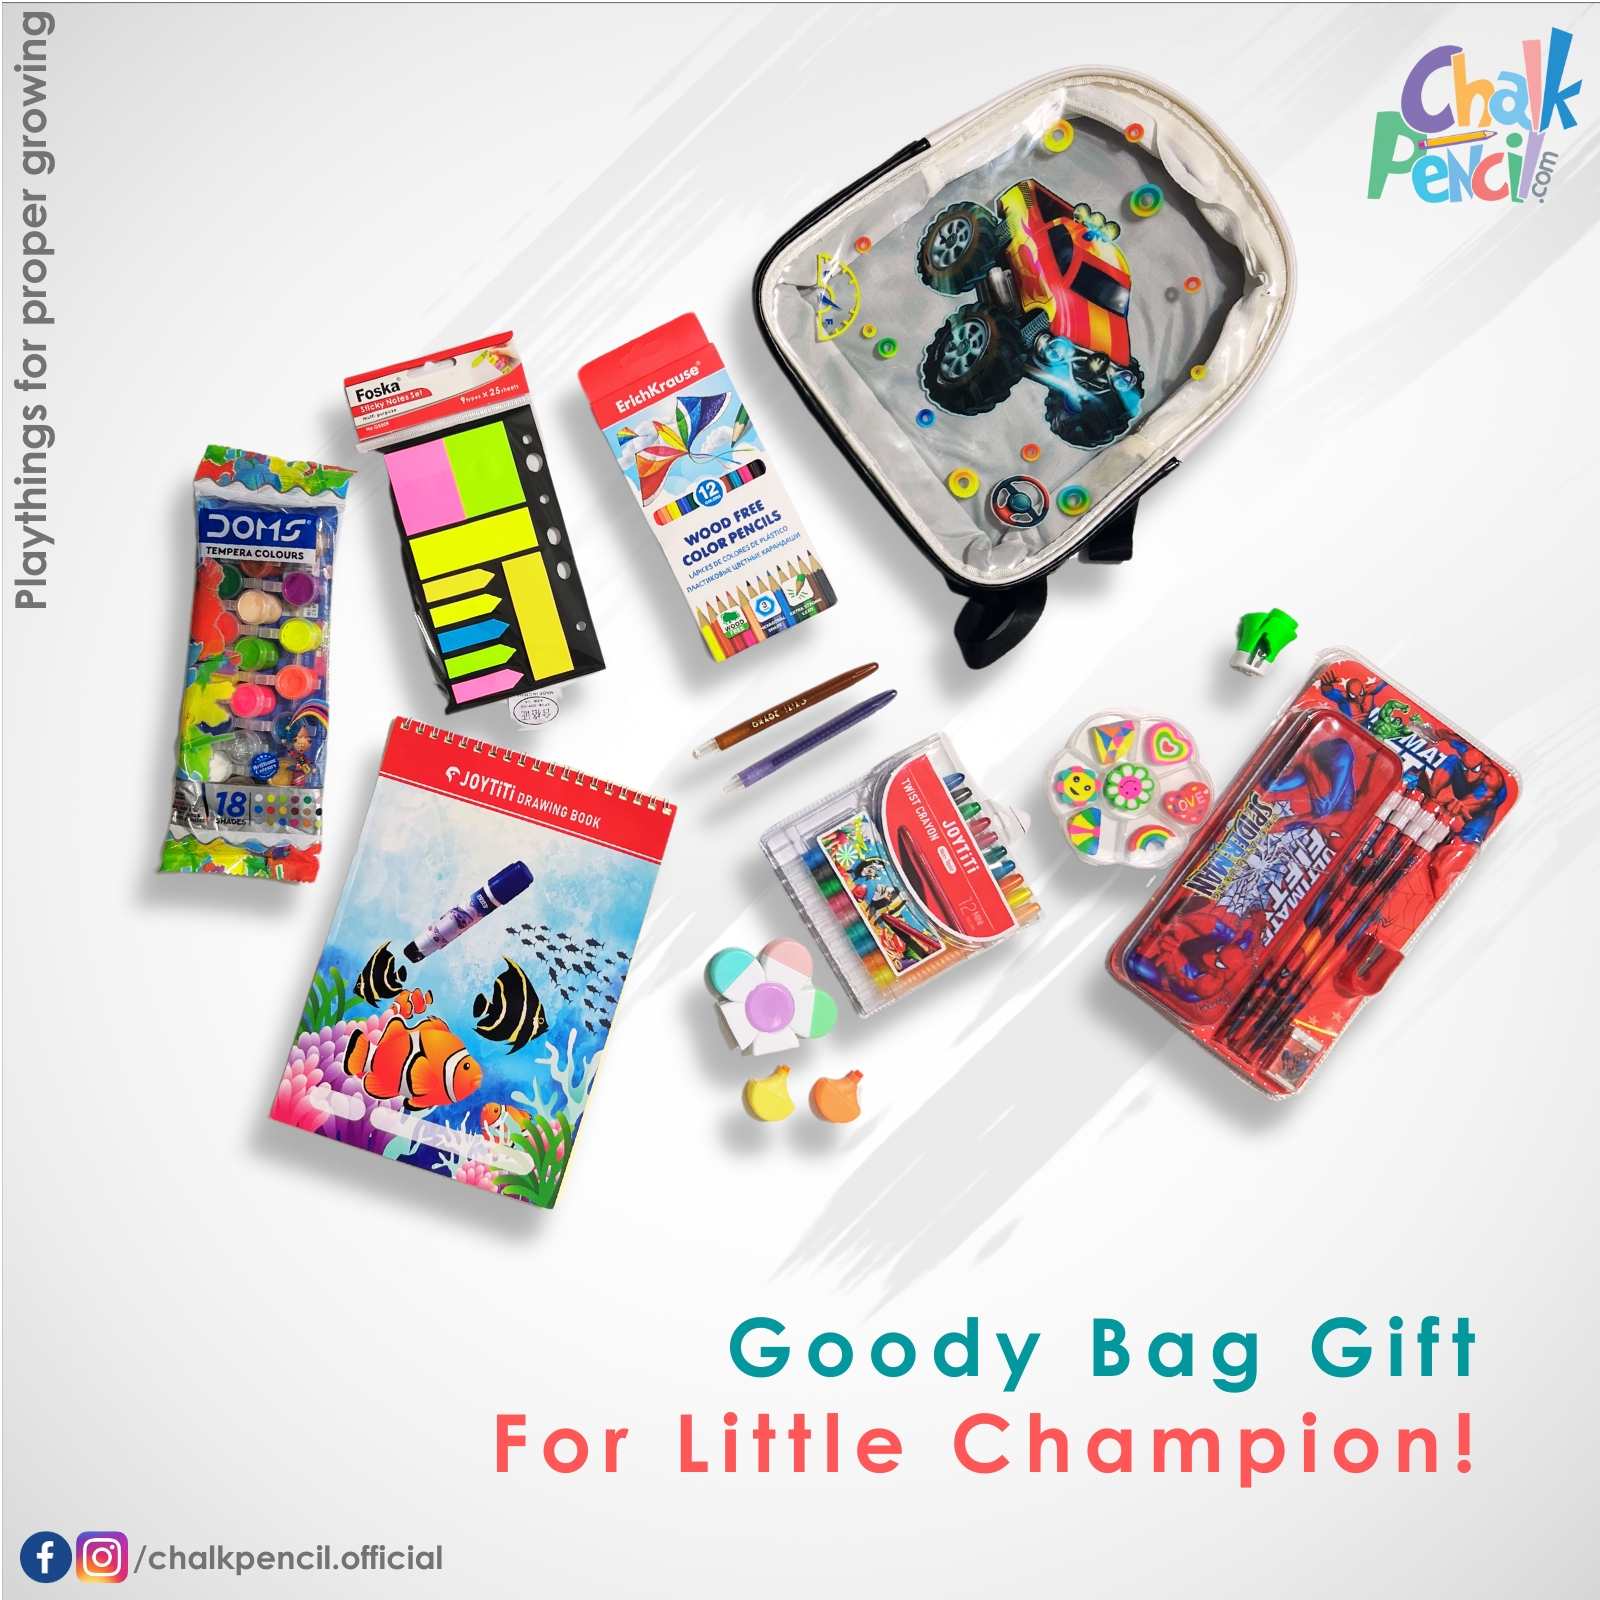 Little Champ’s Goody Bag